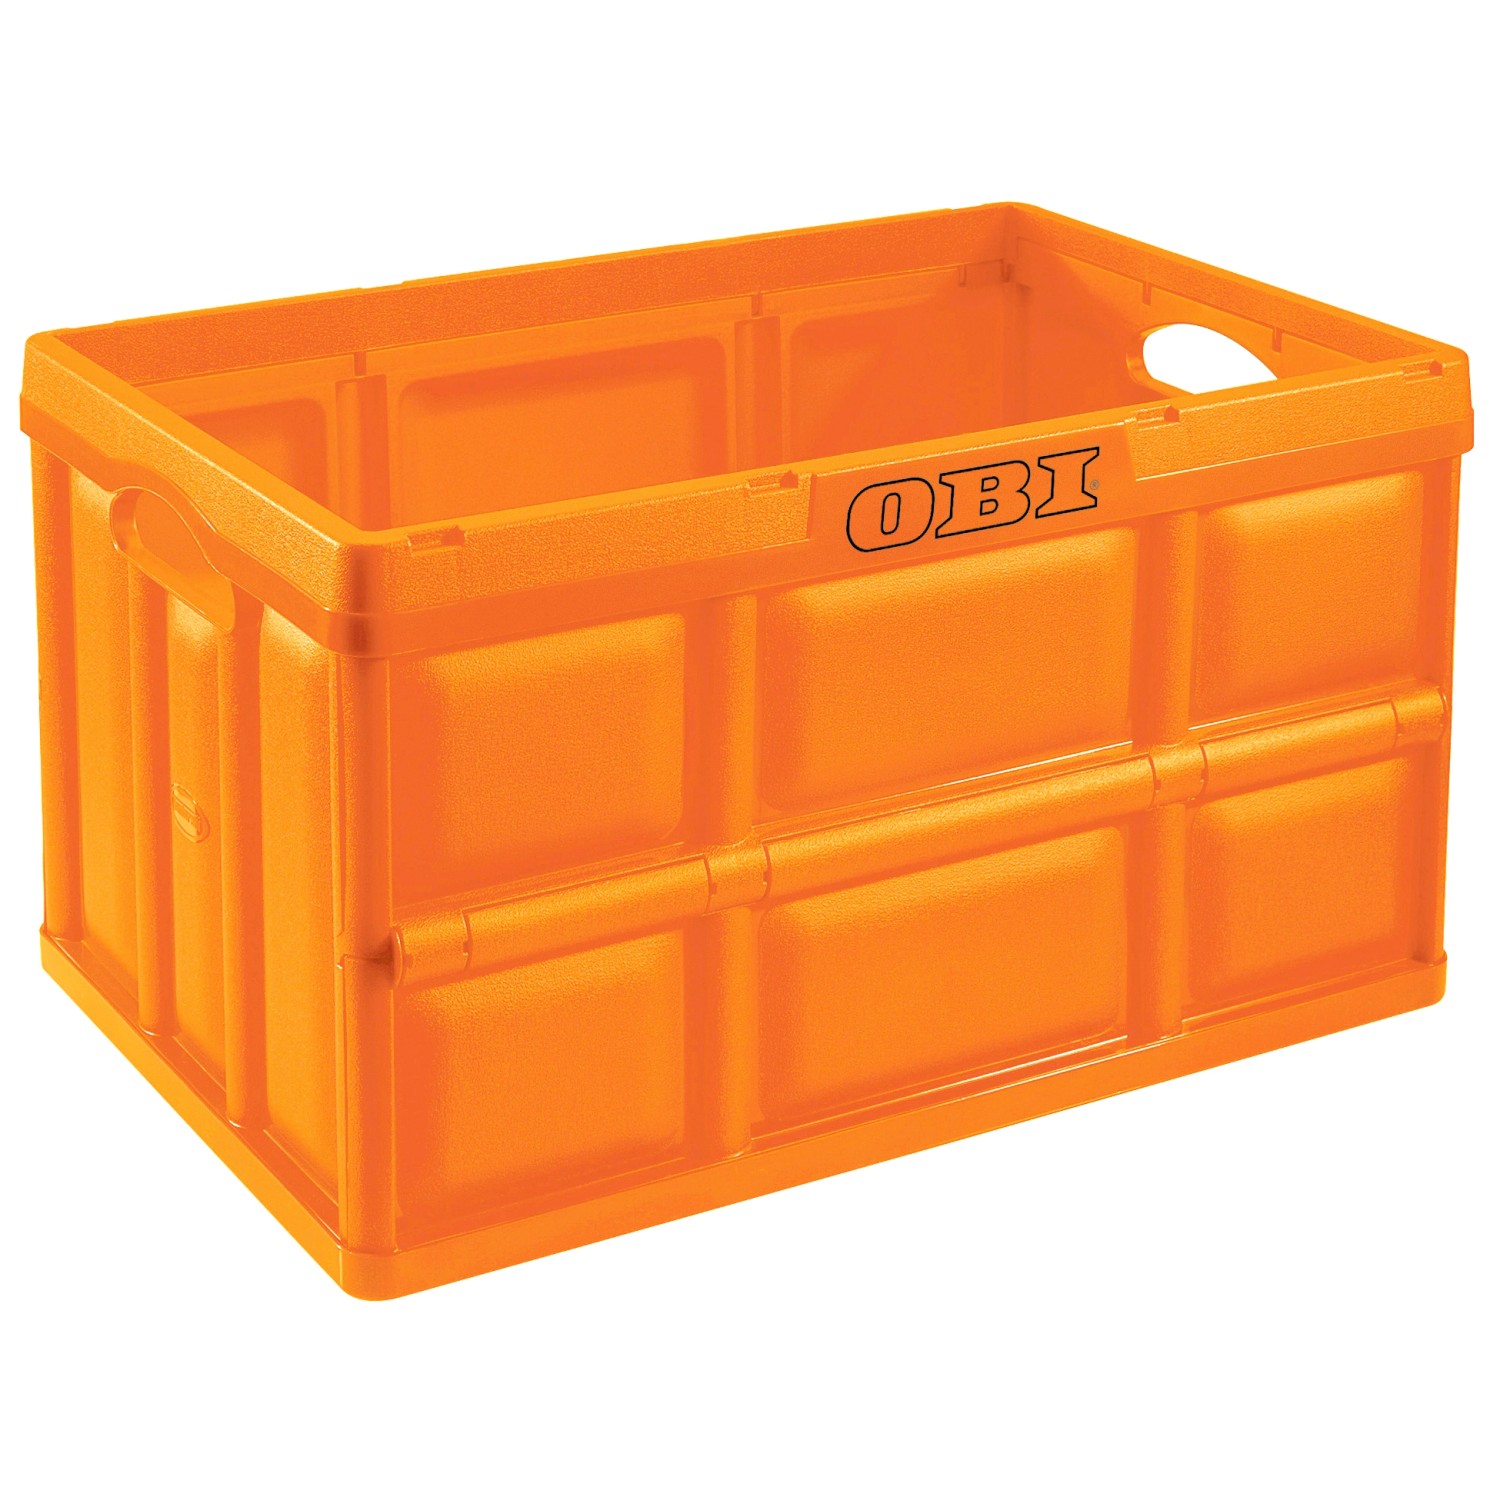 Klappbox Orange 32 l kaufen bei OBI